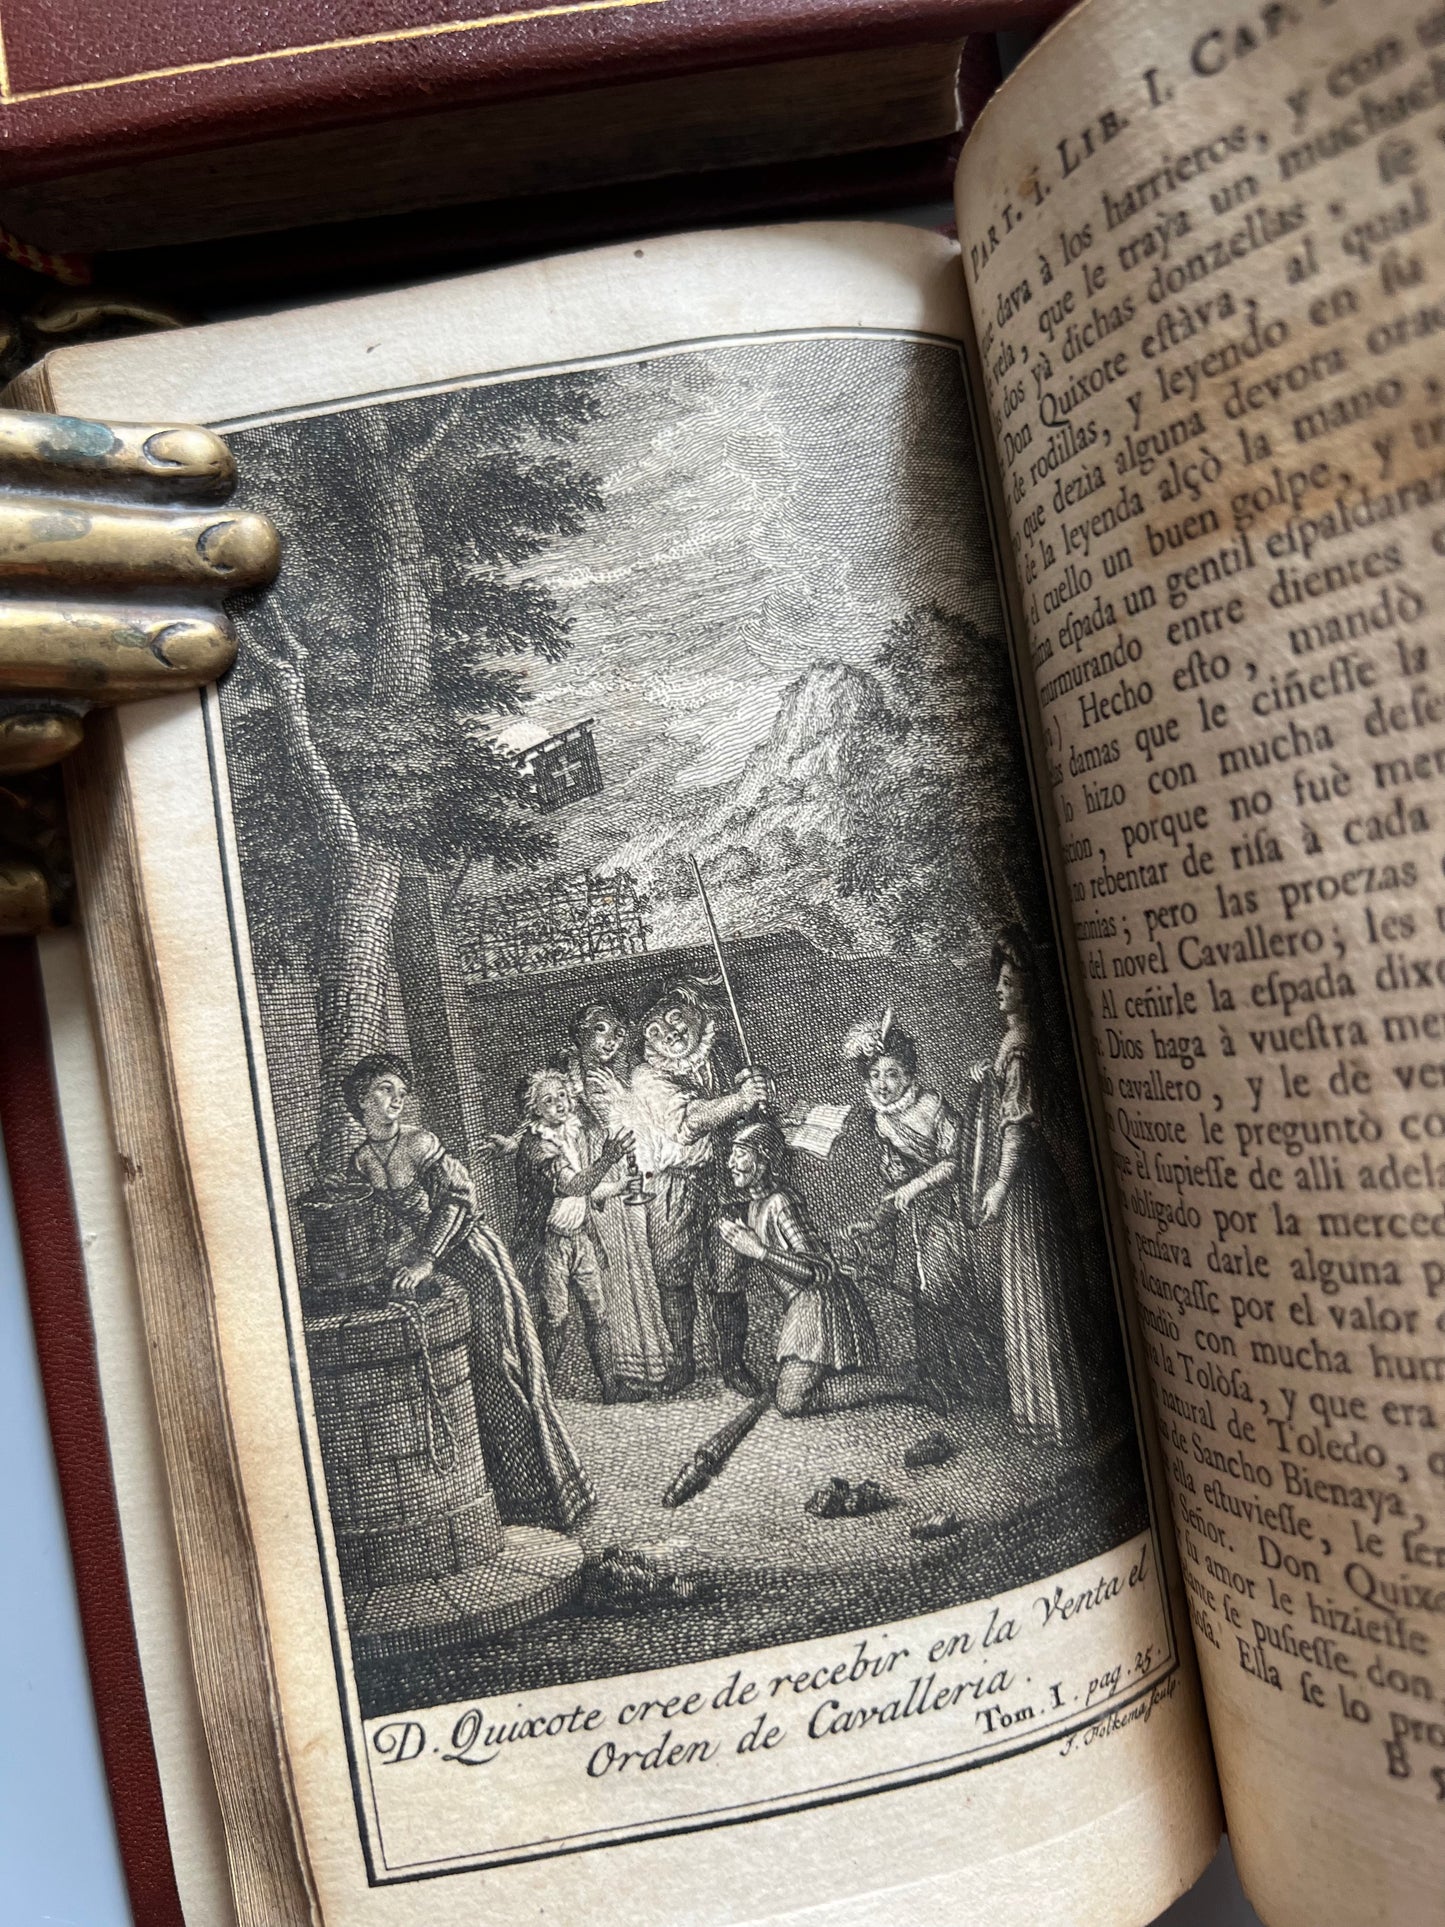 Vida y hechos del ingenioso hidalgo Don Quixote de la Mancha, Miguel de Cervantes - P. Gosse y A. Moetjens, 1744